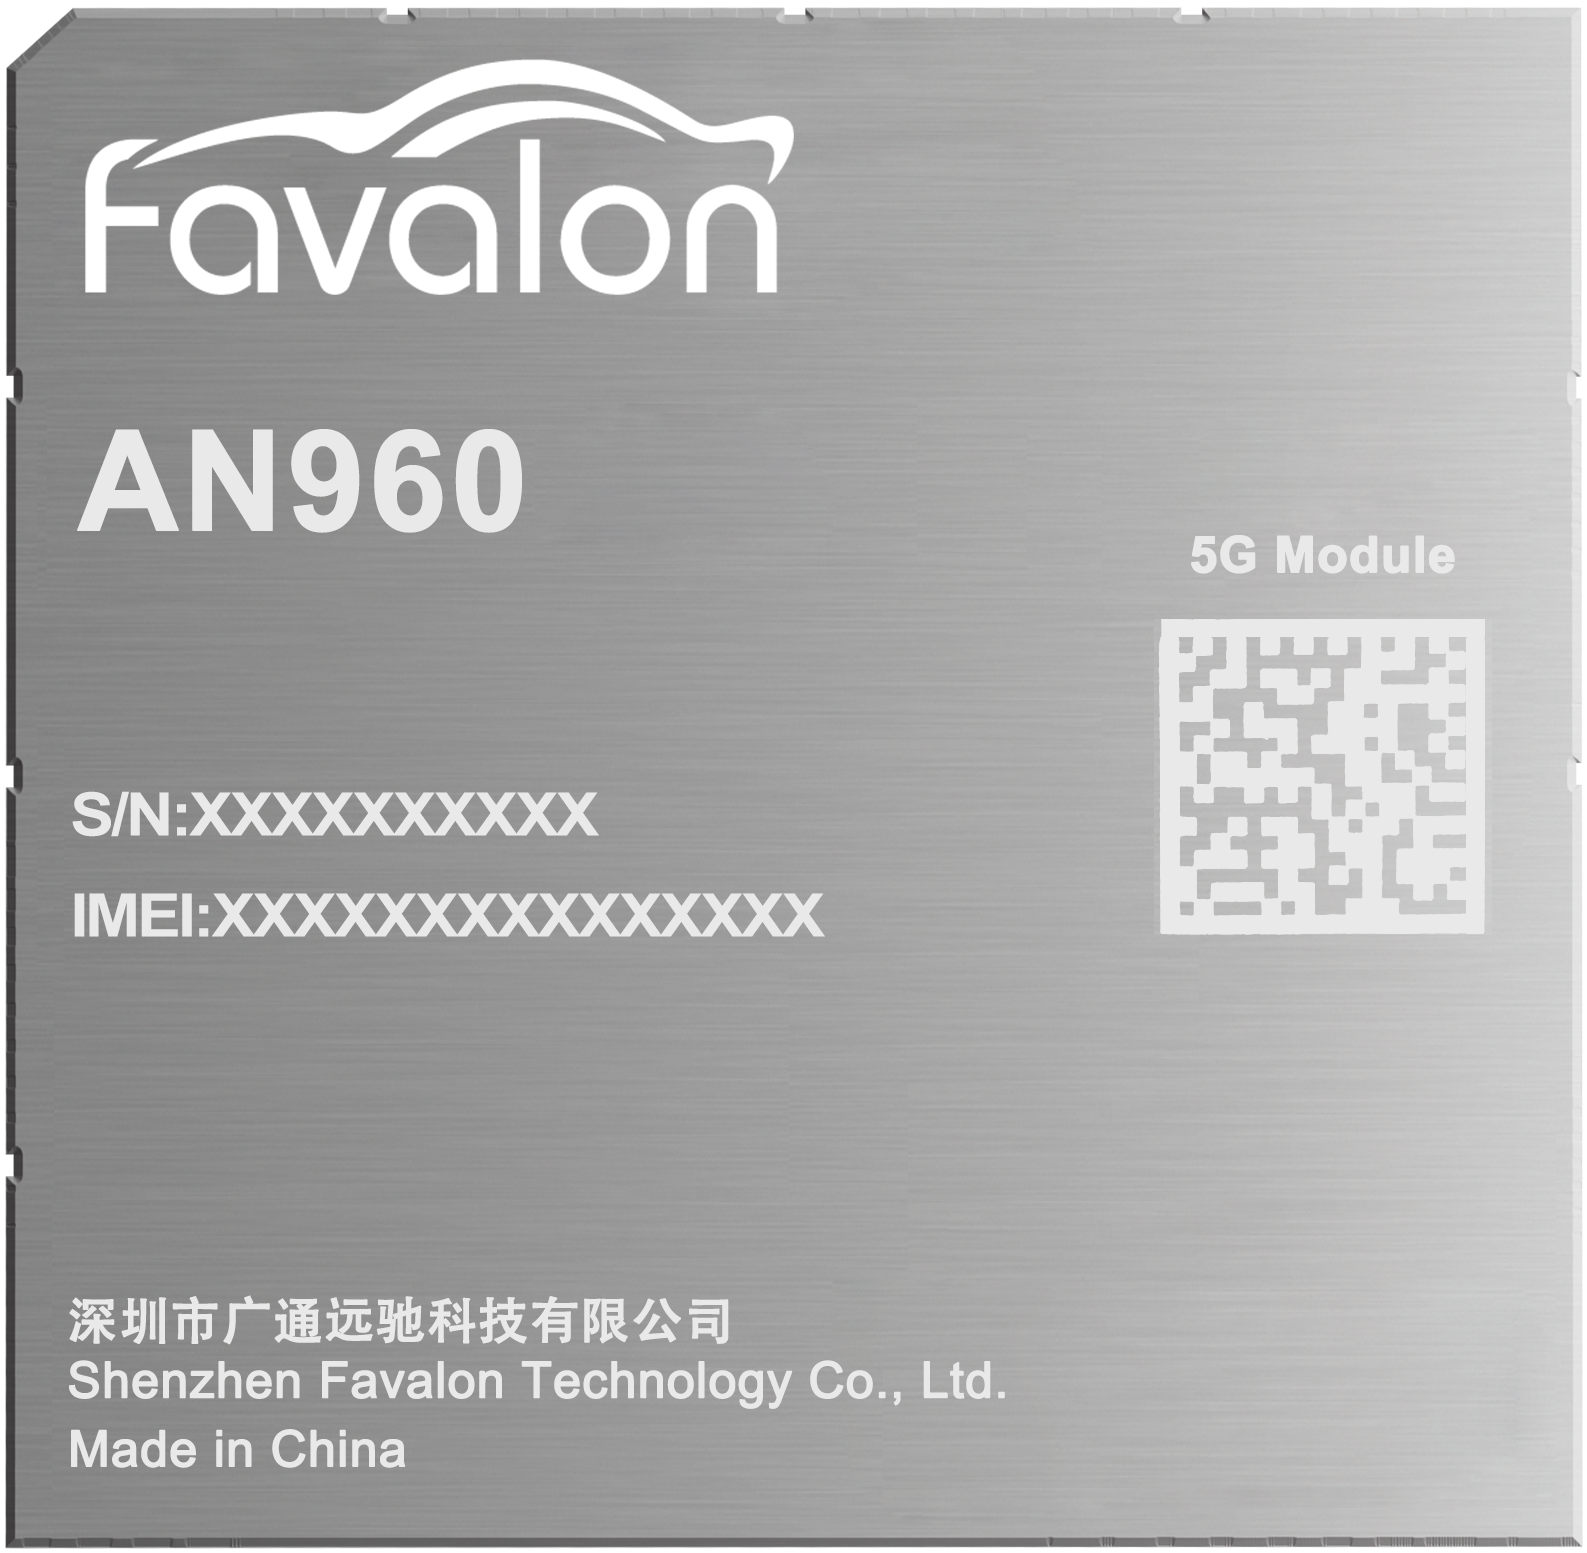 Favalon AN960